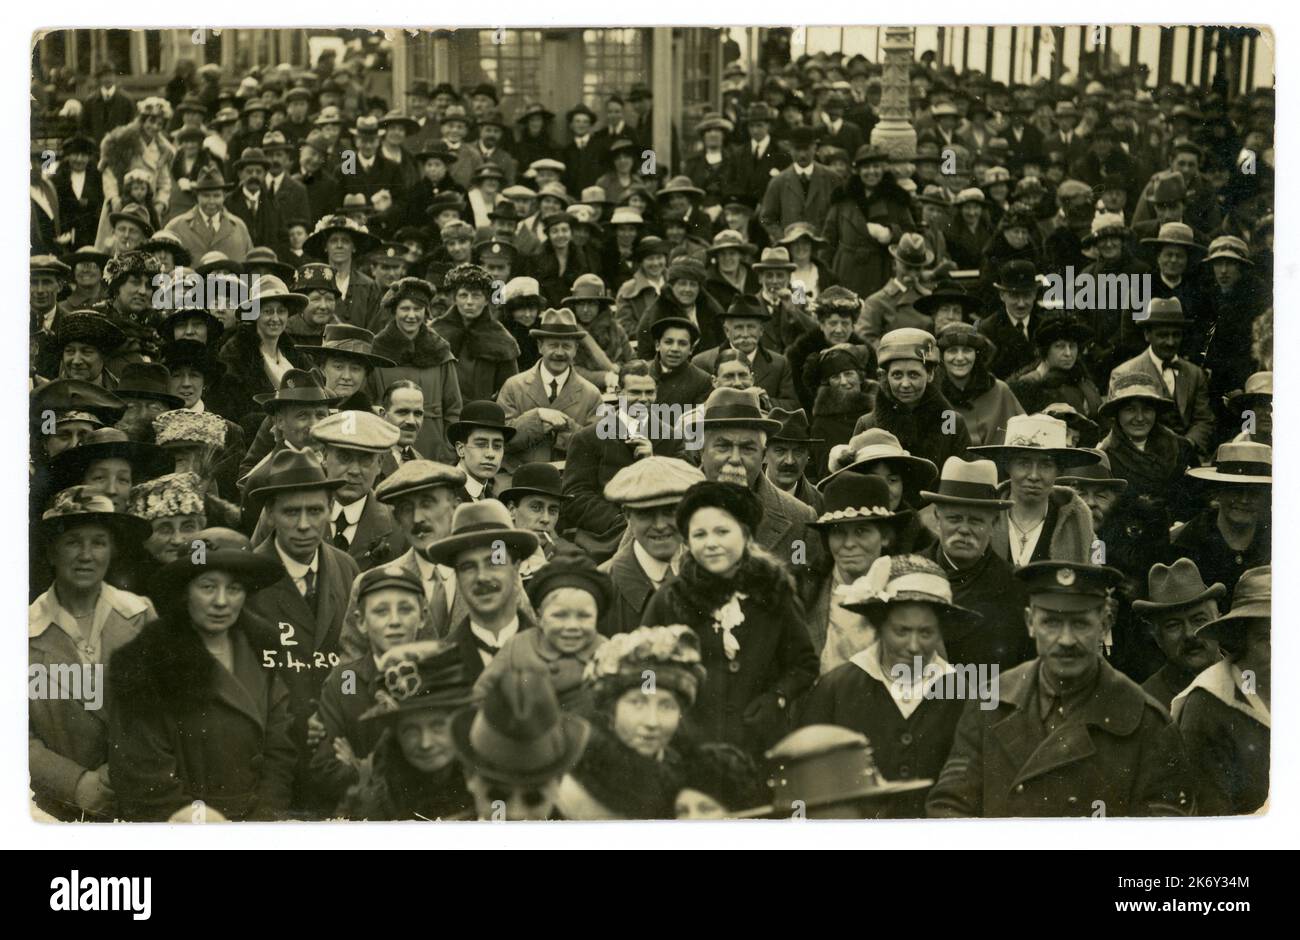 Originale 1920 's classe operaia vacanza folla datato 5 aprile 1920, stazione balneare britannica, un sacco di personaggi e di moda, tra cui cappelli piatti e cappelli homburg. REGNO UNITO Foto Stock